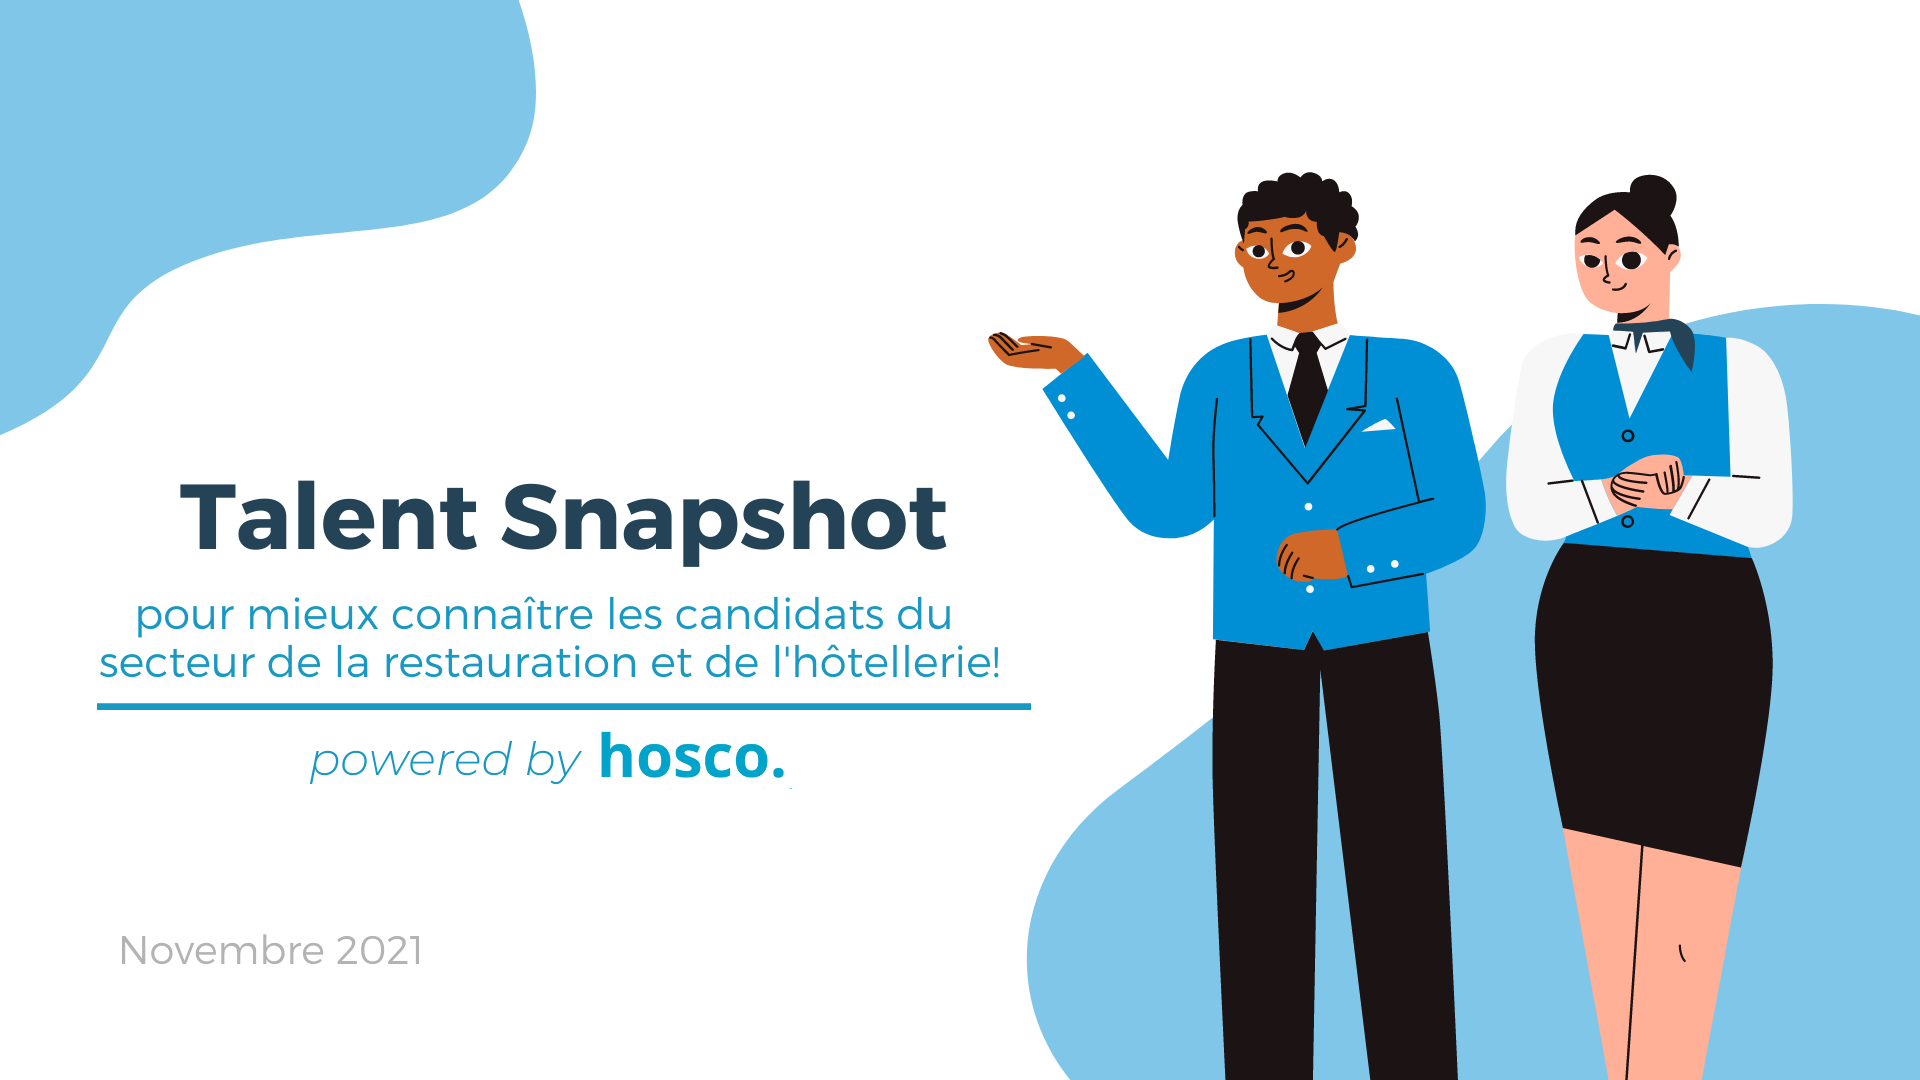 Talent Snapshot : pour mieux connaître les candidats du secteur de la restauration et de l'hôtellerie!